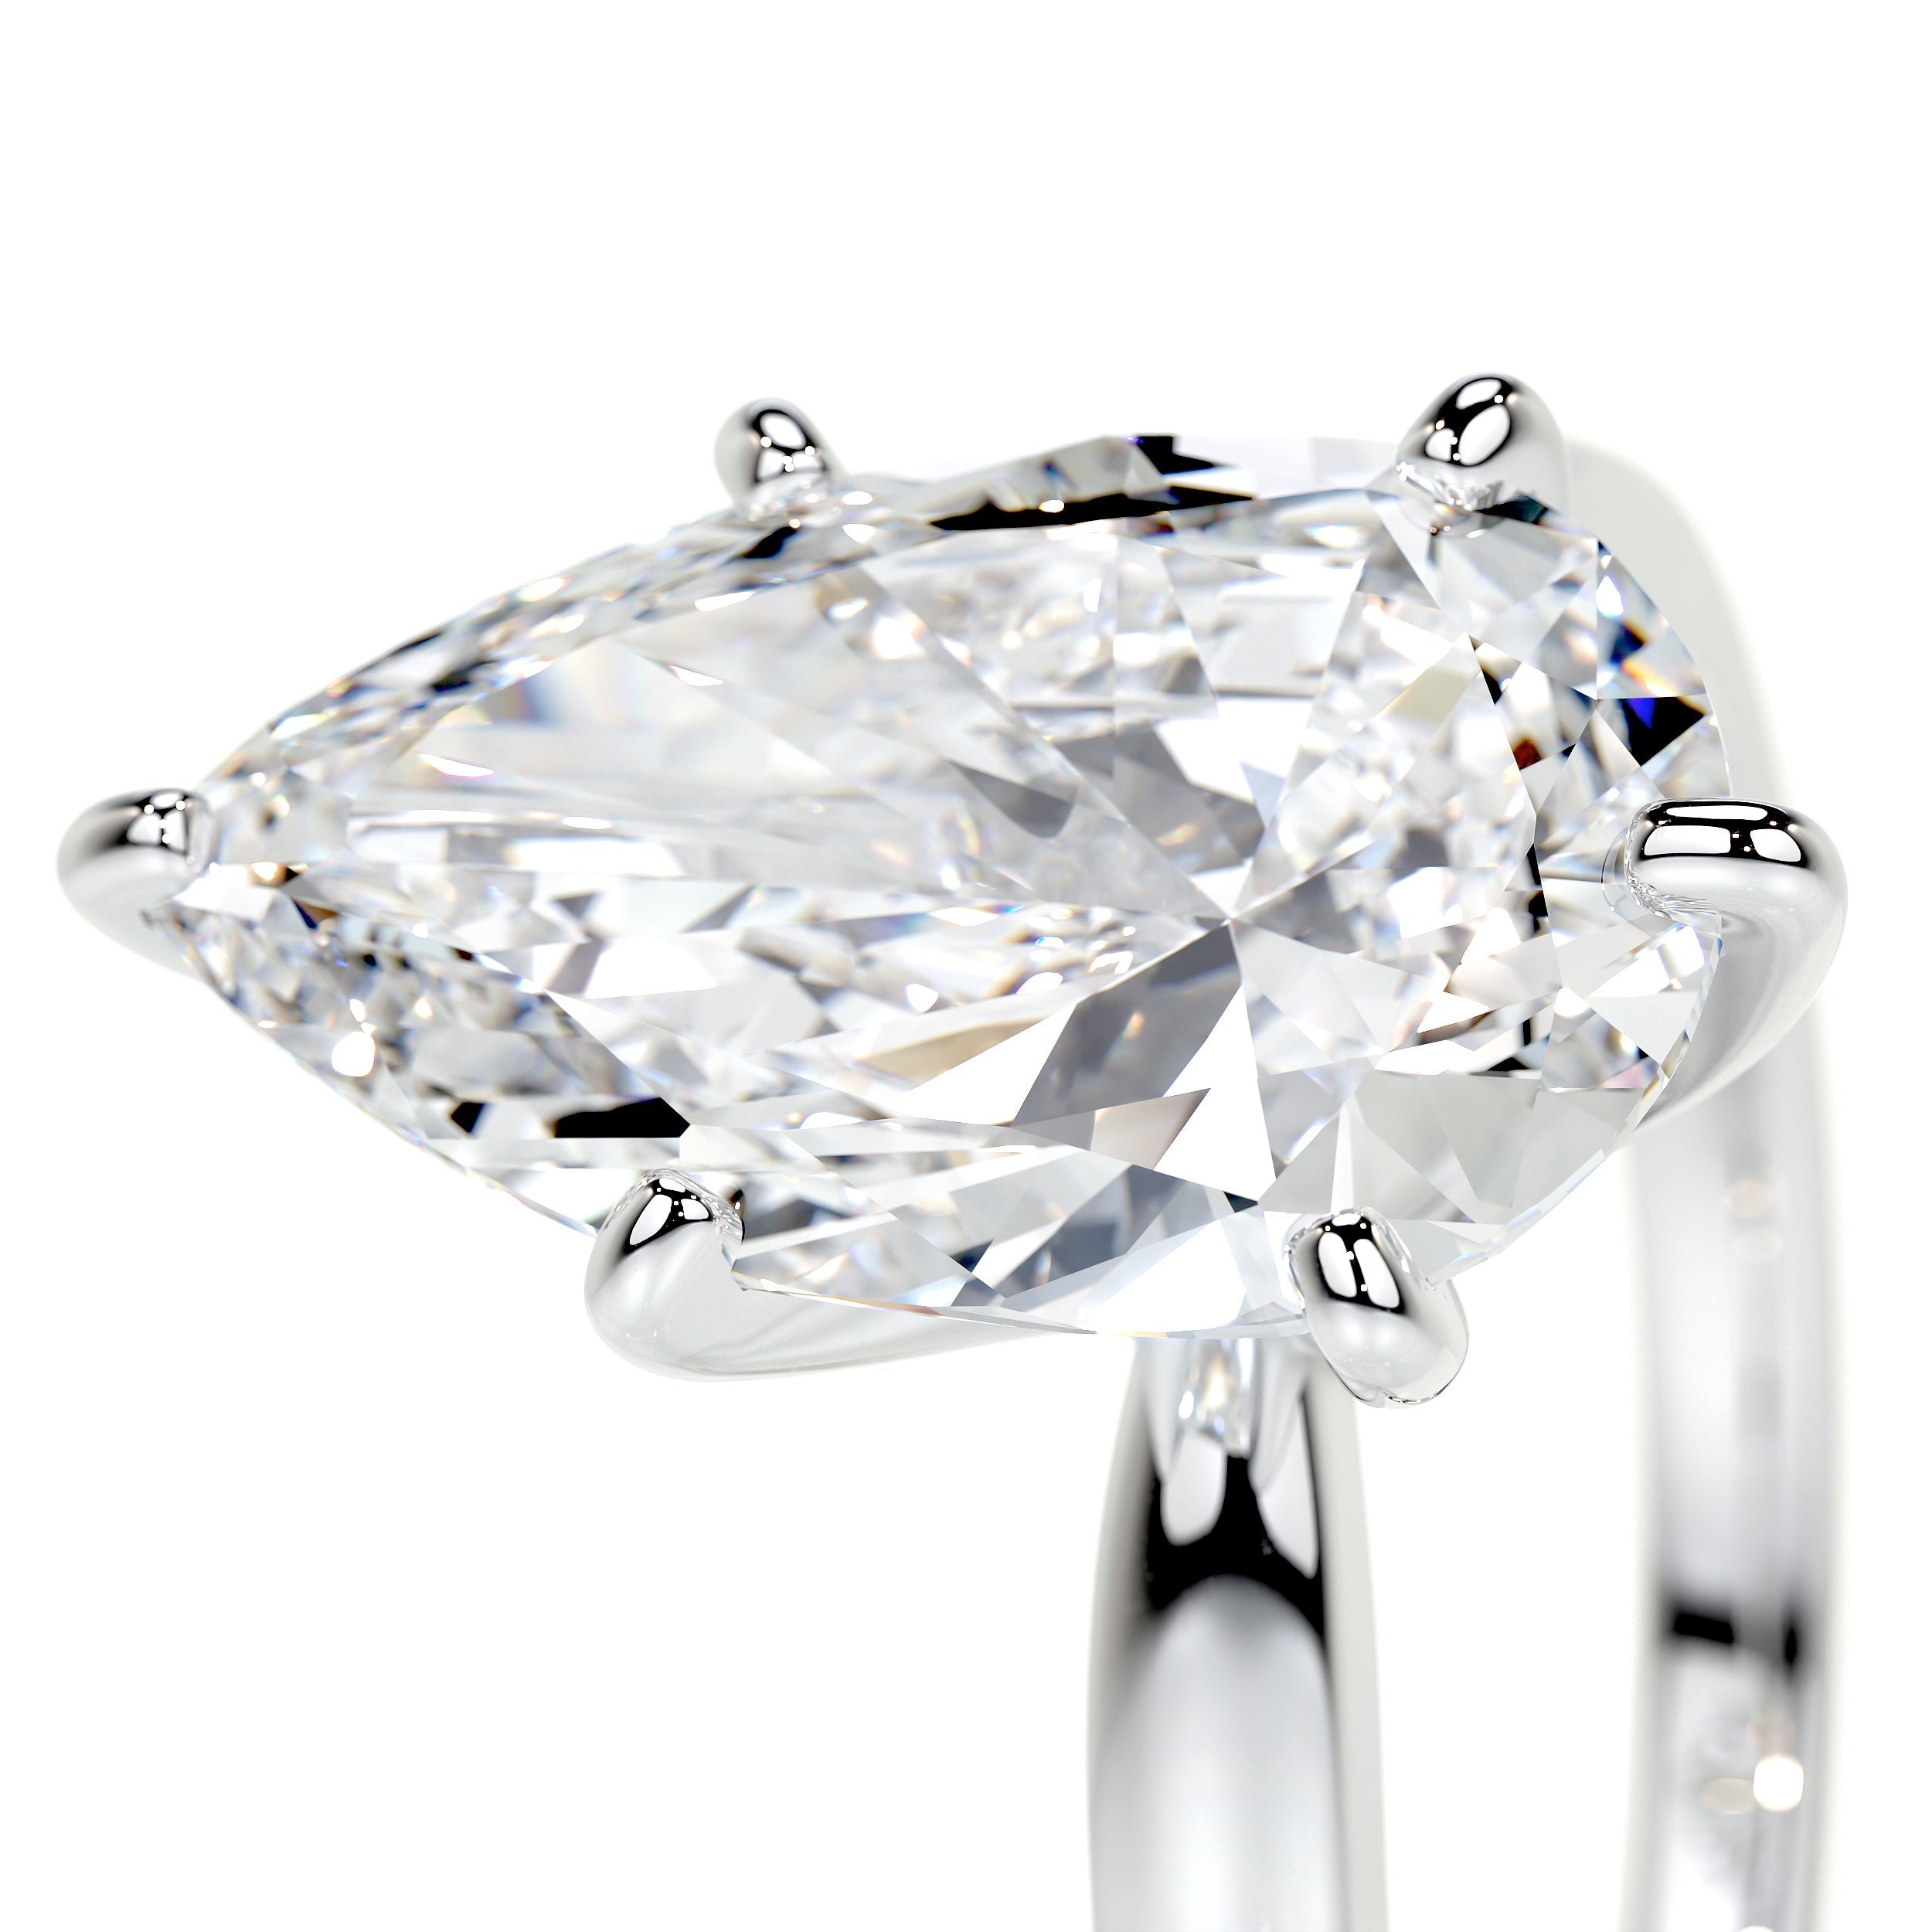 Adaline Lab Grown Diamond Ring   (5 Carat) -18K White Gold